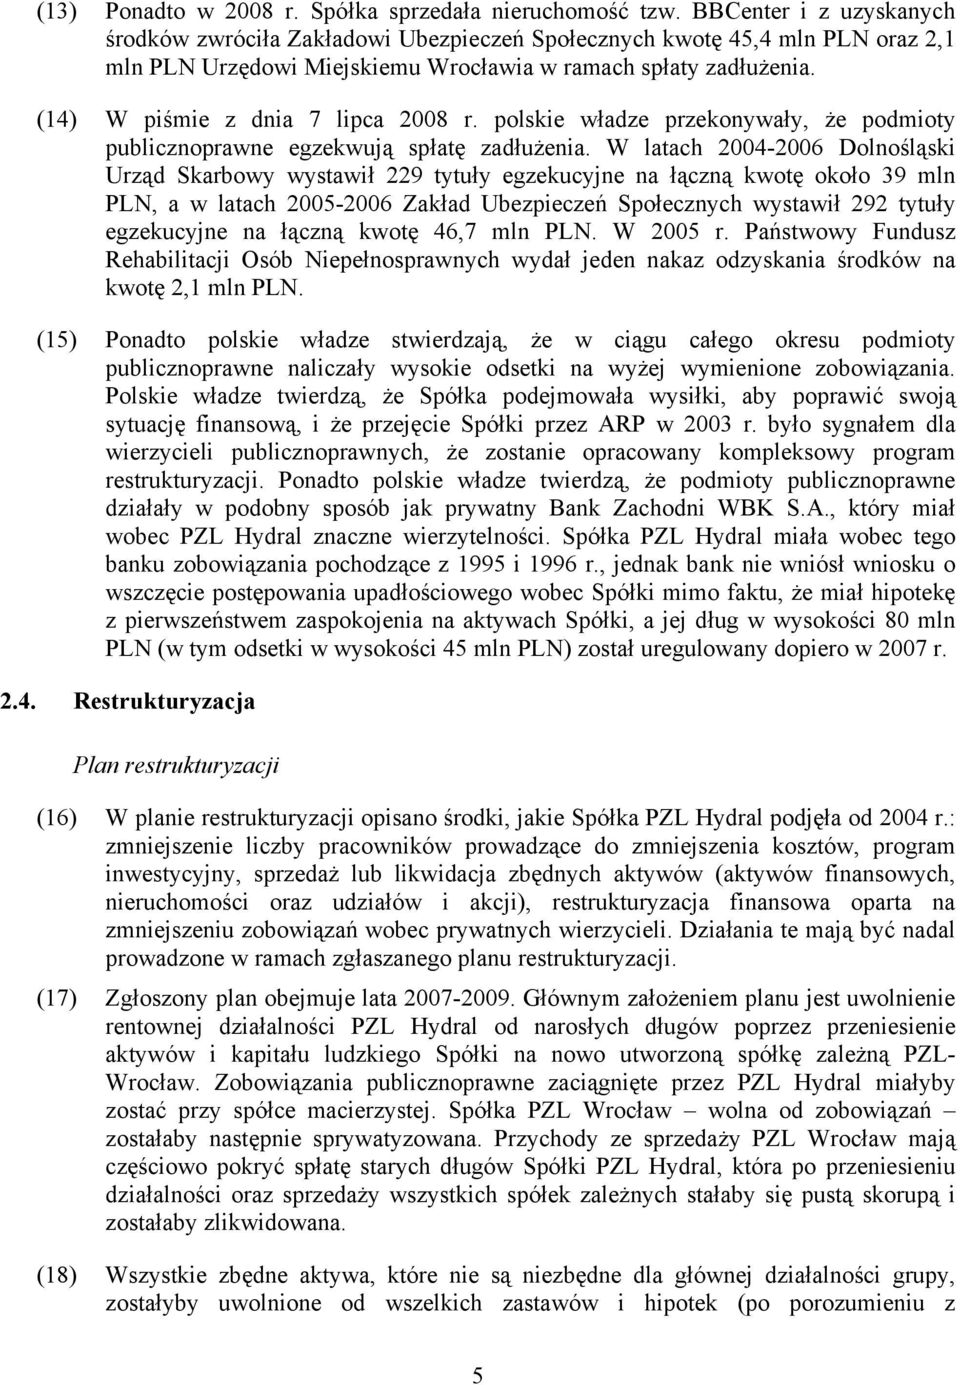 (14) W piśmie z dnia 7 lipca 2008 r. polskie władze przekonywały, że podmioty publicznoprawne egzekwują spłatę zadłużenia.